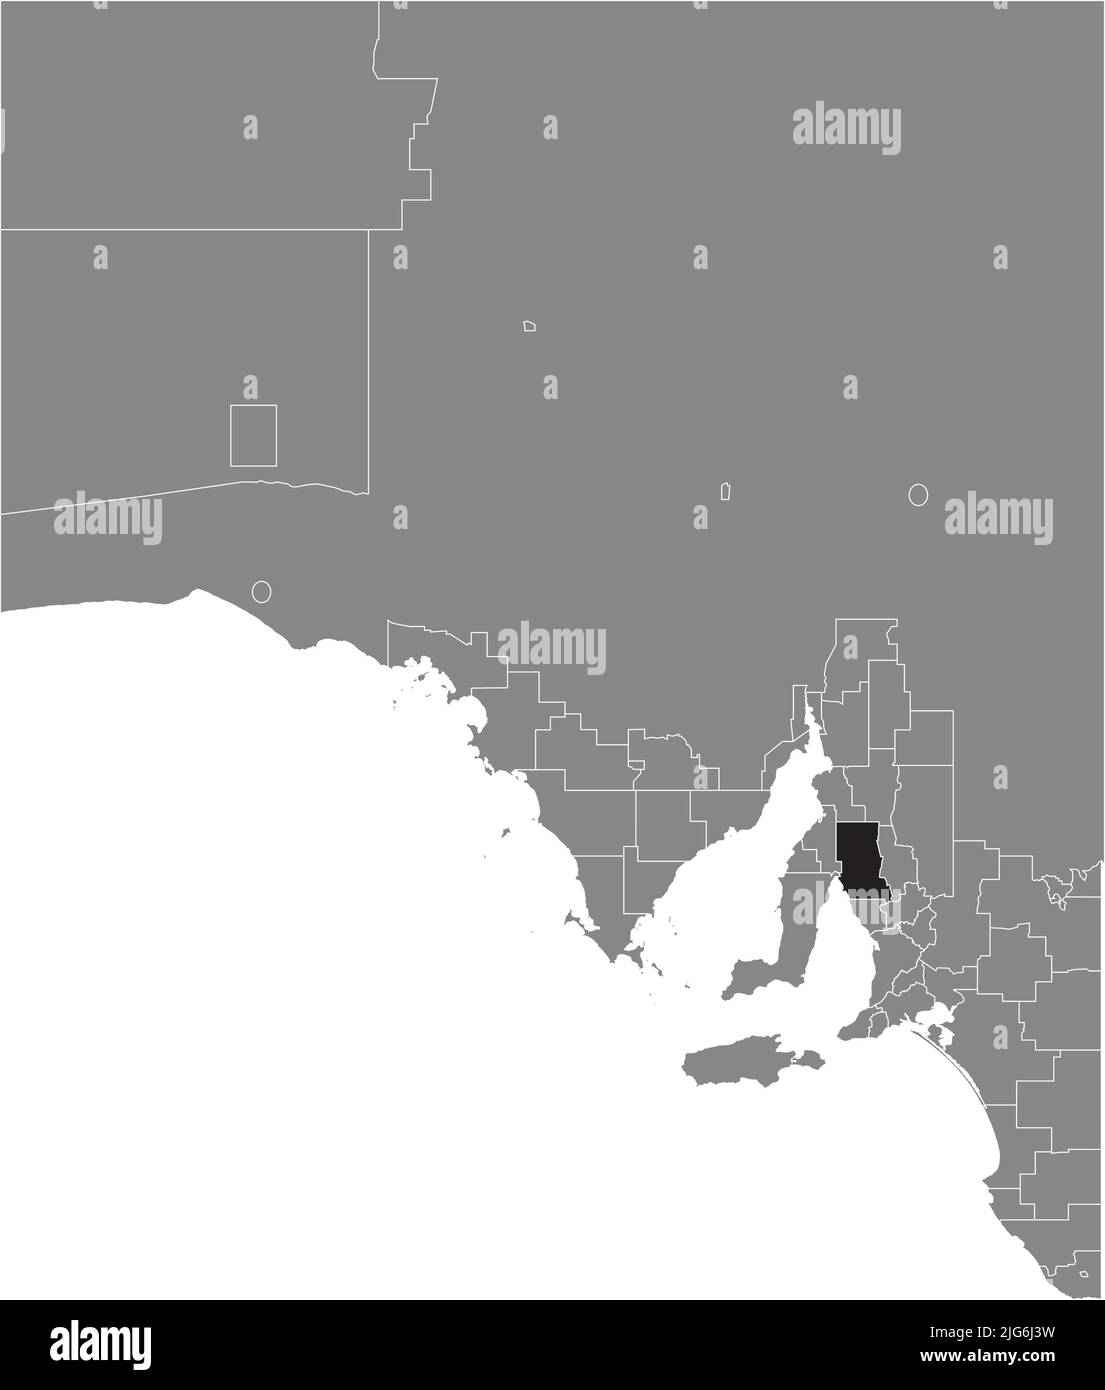 Carte de localisation du CONSEIL RÉGIONAL DE WAKEFIELD, AUSTRALIE MÉRIDIONALE Illustration de Vecteur